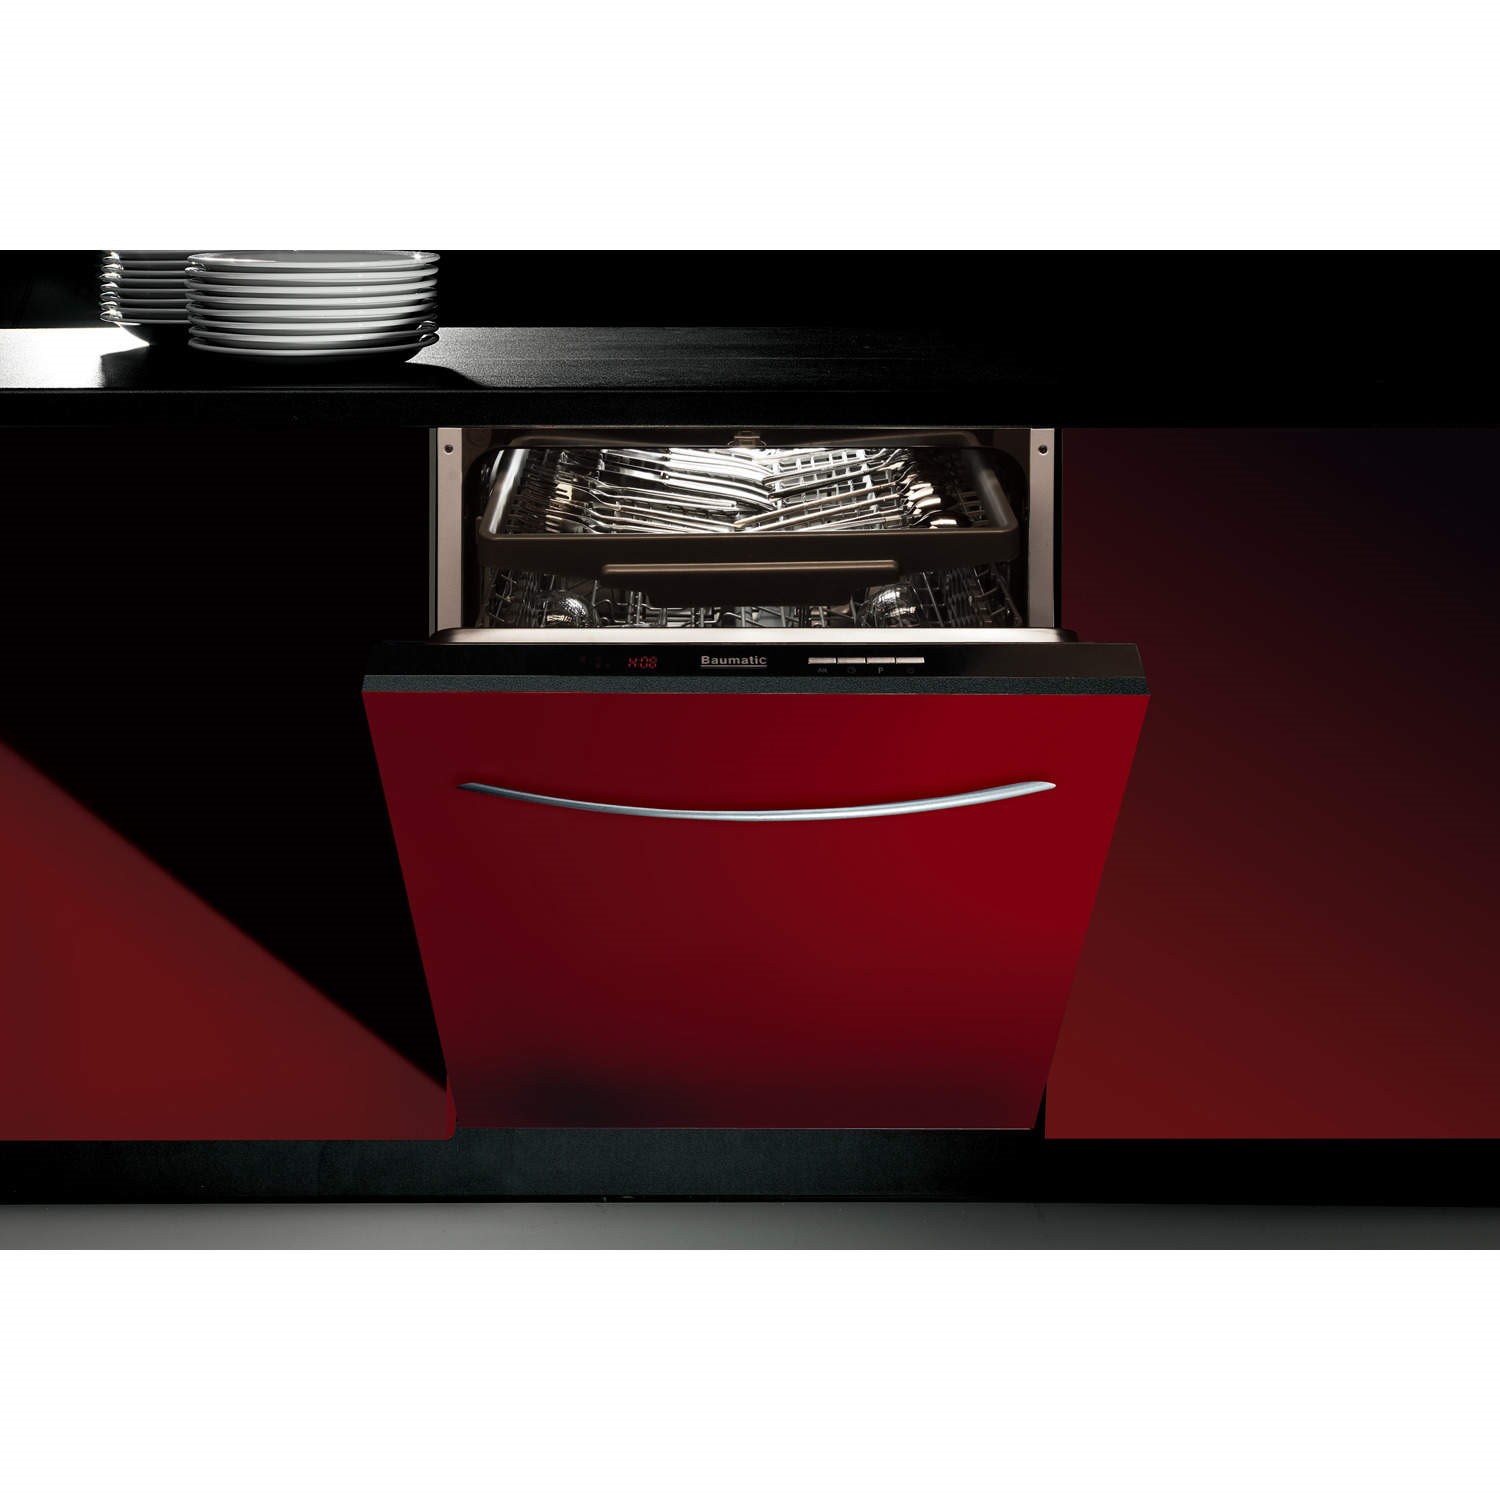 Встраиваемая посудомоечная машина 60 рейтинг качество. Посудомоечная машина Baumatic tg5. Встраиваемая посудомоечная машина 60 см AKPO 18002. Встраиваемая посудомоечная машина 60 cm smv8hcx10r. Встраиваемая машина посудомойка 60 см.